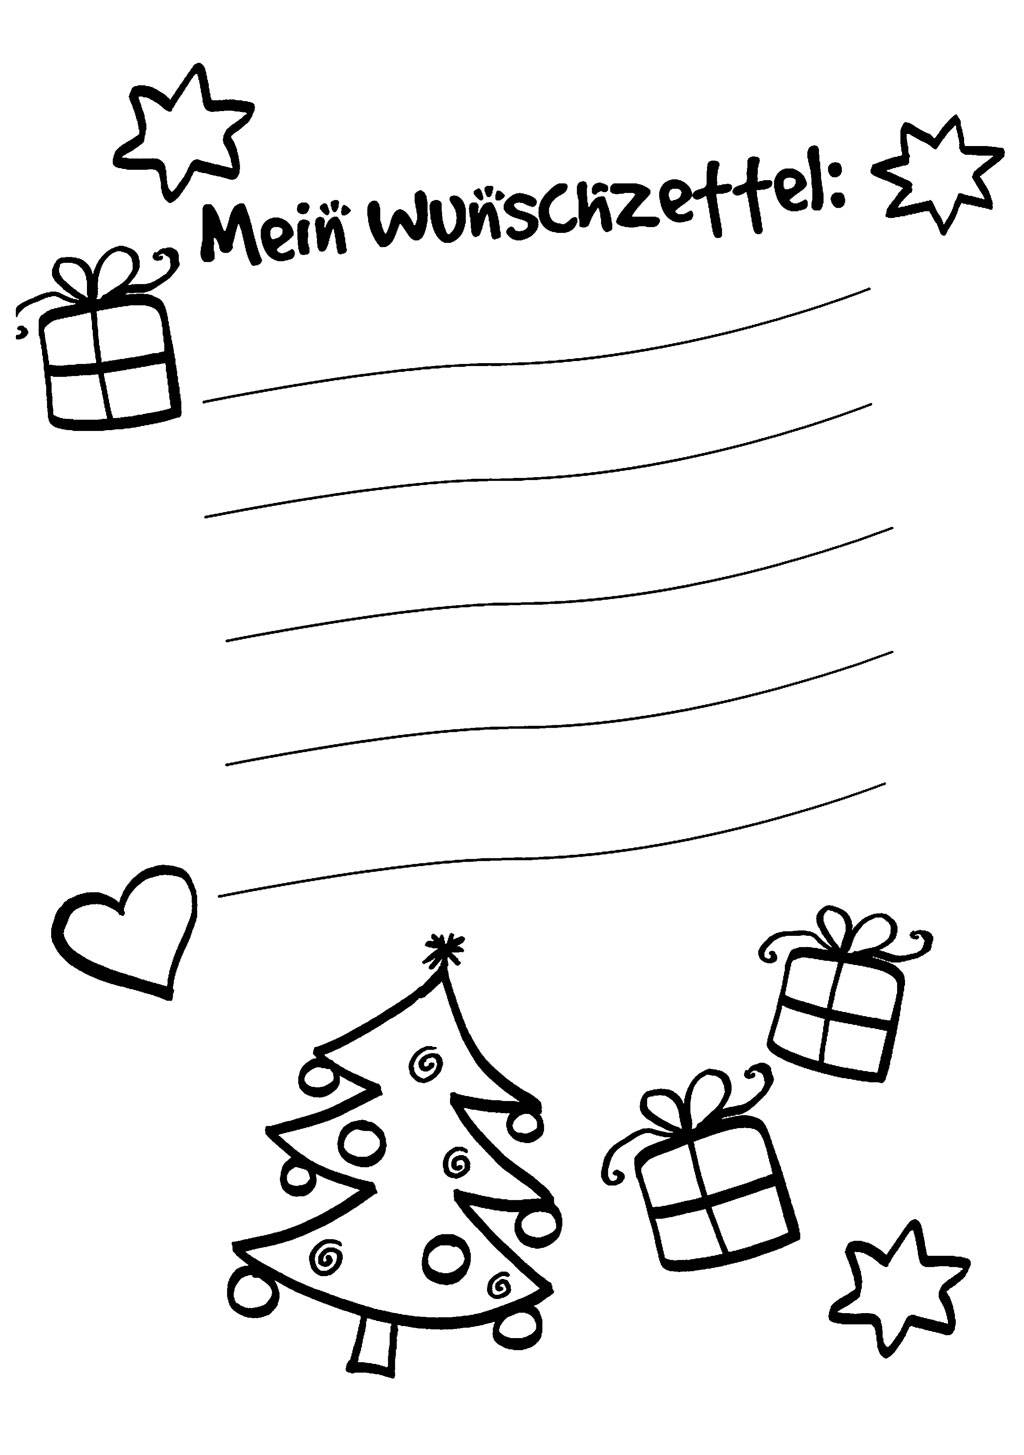 Ausmalbild Wunschzettel Für Weihnachten: Wunschzettel Zum mit Wunschzettel Zum Ausmalen Und Ausdrucken